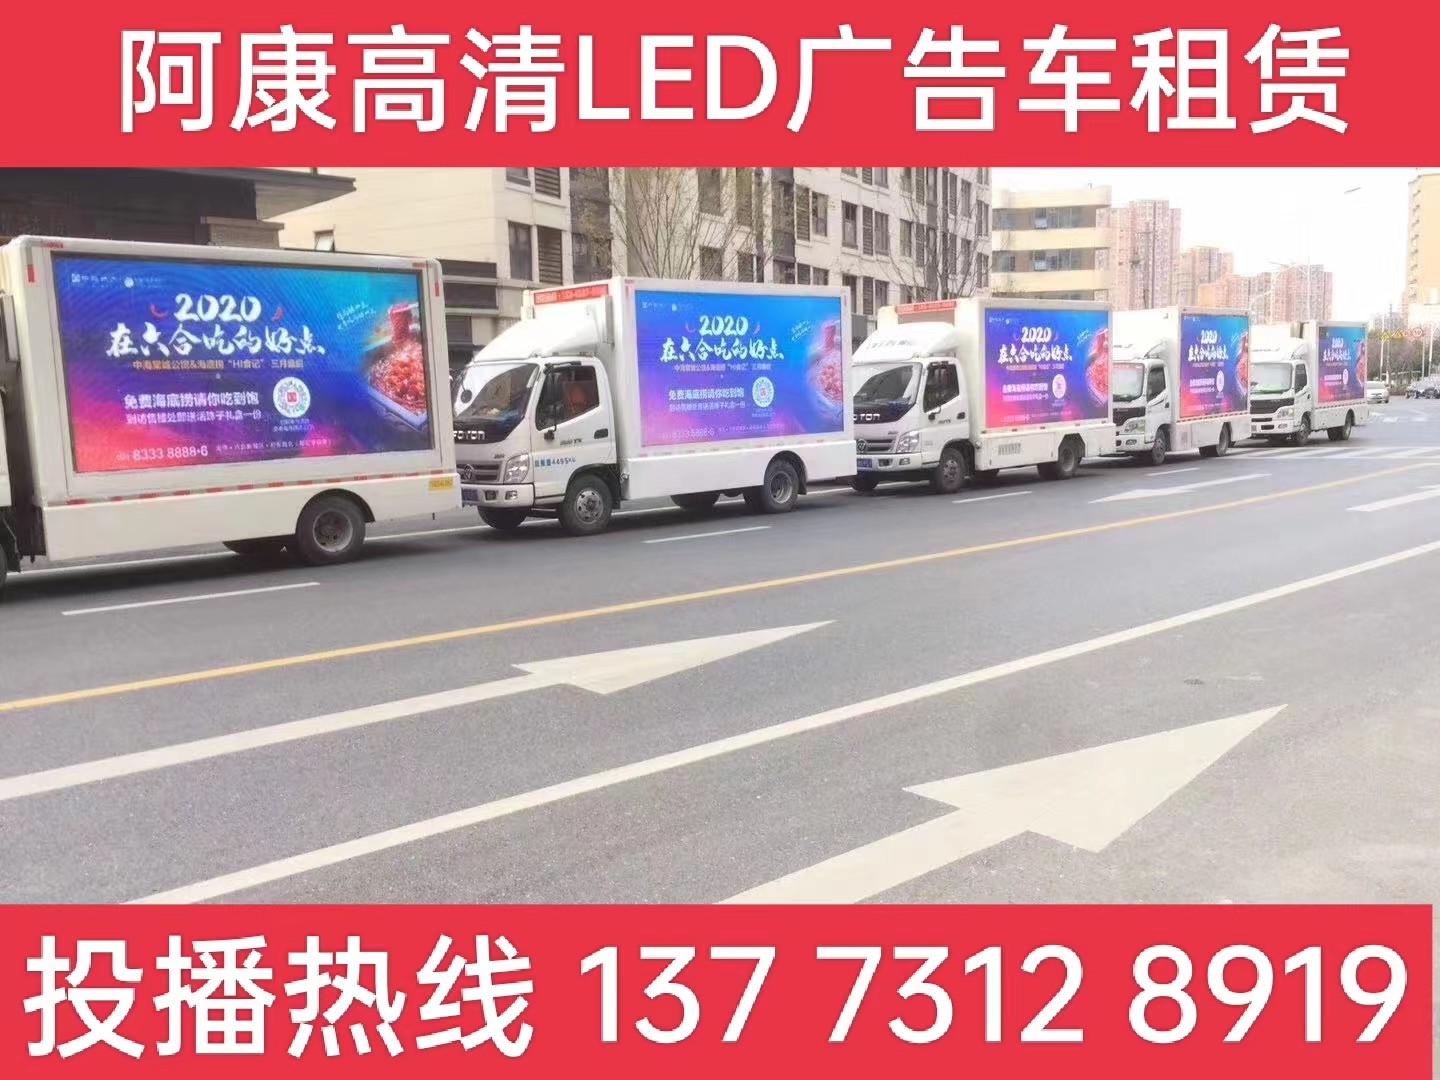 沭阳县宣传车出租-海底捞LED广告